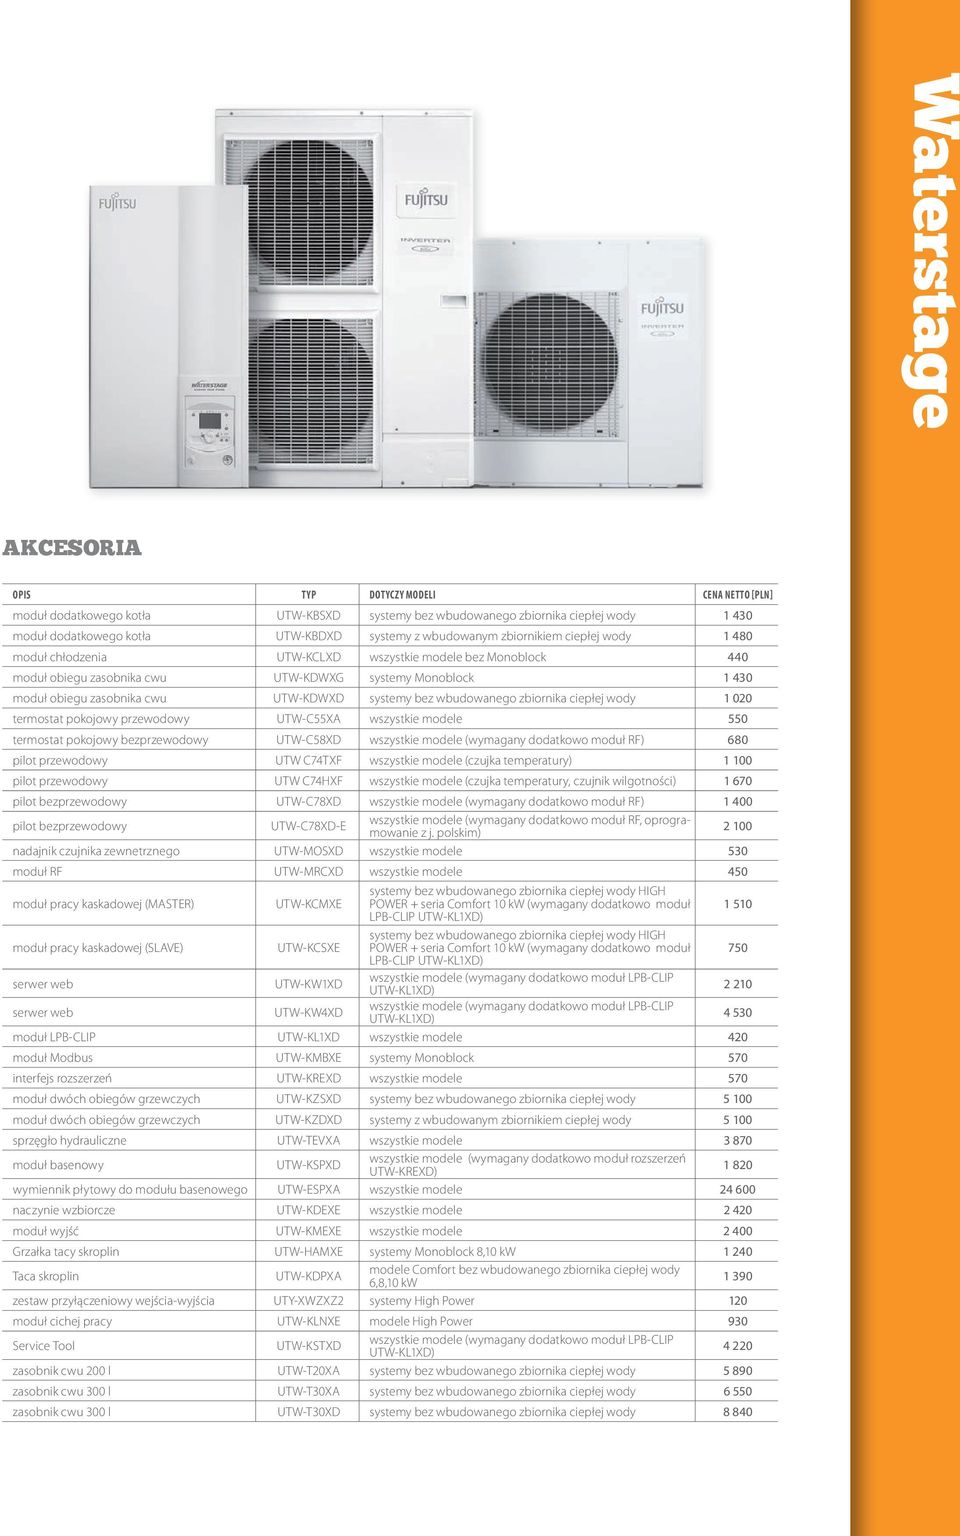 wbudowanego zbiornika ciepłej wody 1 020 termostat pokojowy przewodowy UTW-C55XA wszystkie modele 550 termostat pokojowy bezprzewodowy UTW-C58XD wszystkie modele (wymagany dodatkowo moduł RF) 680